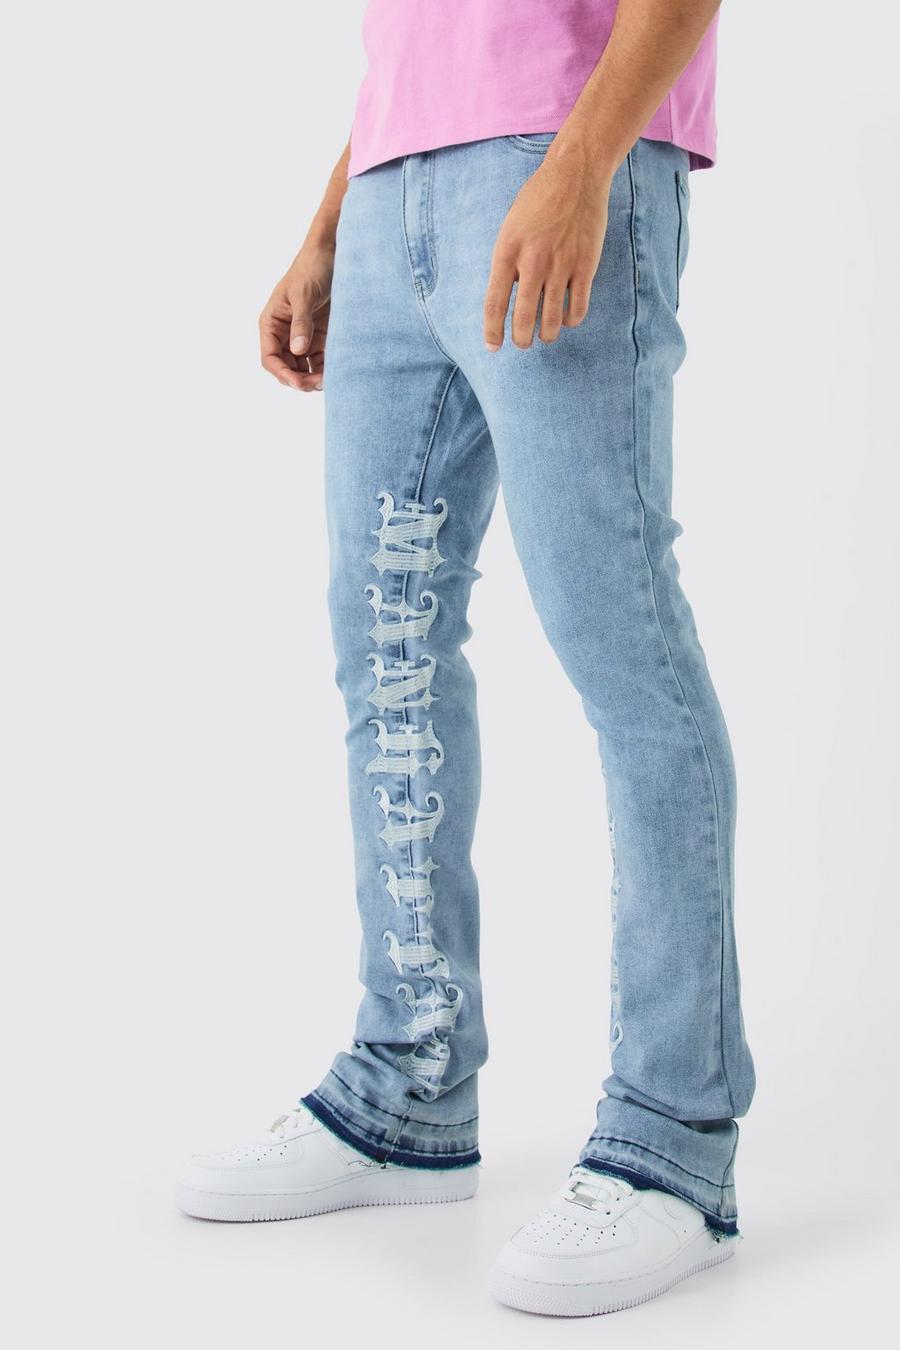 Jeans Skinny Fit in Stretch con inserti, ricami e pieghe sul fondo, Antique blue